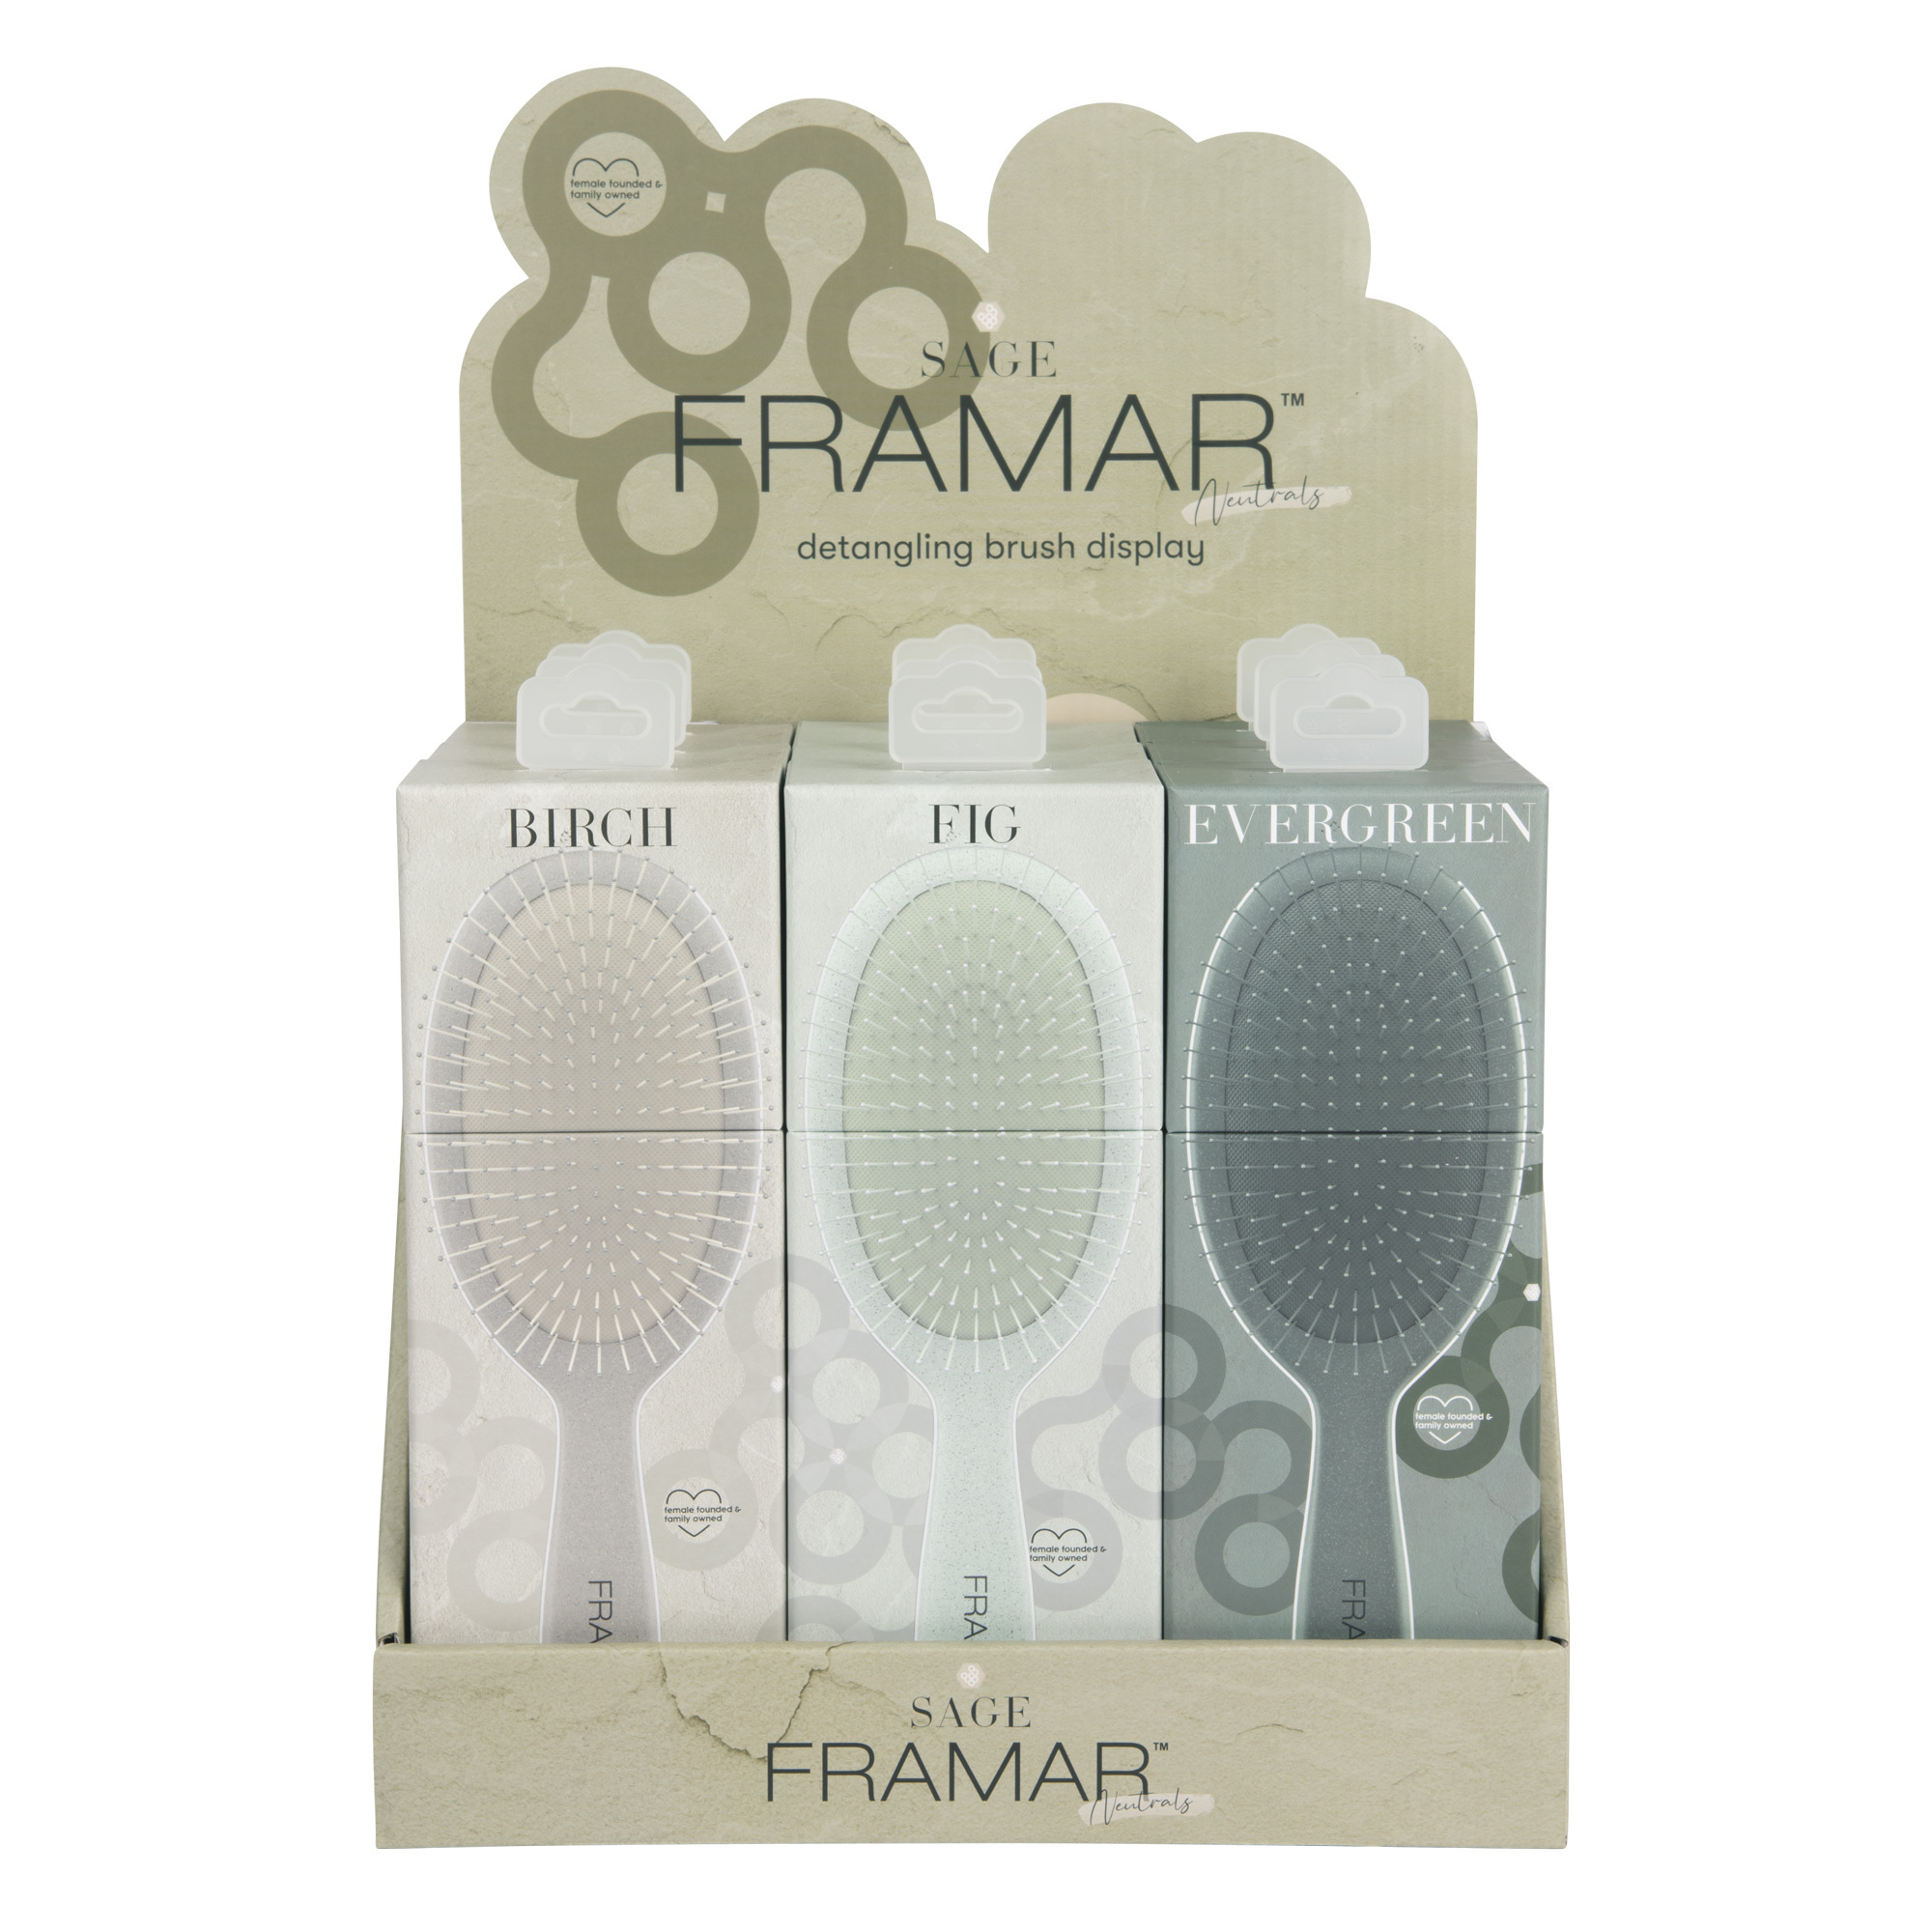 Framar HAIR BRUSHES: 9 Pc Sage Retail Detangle Brush Display